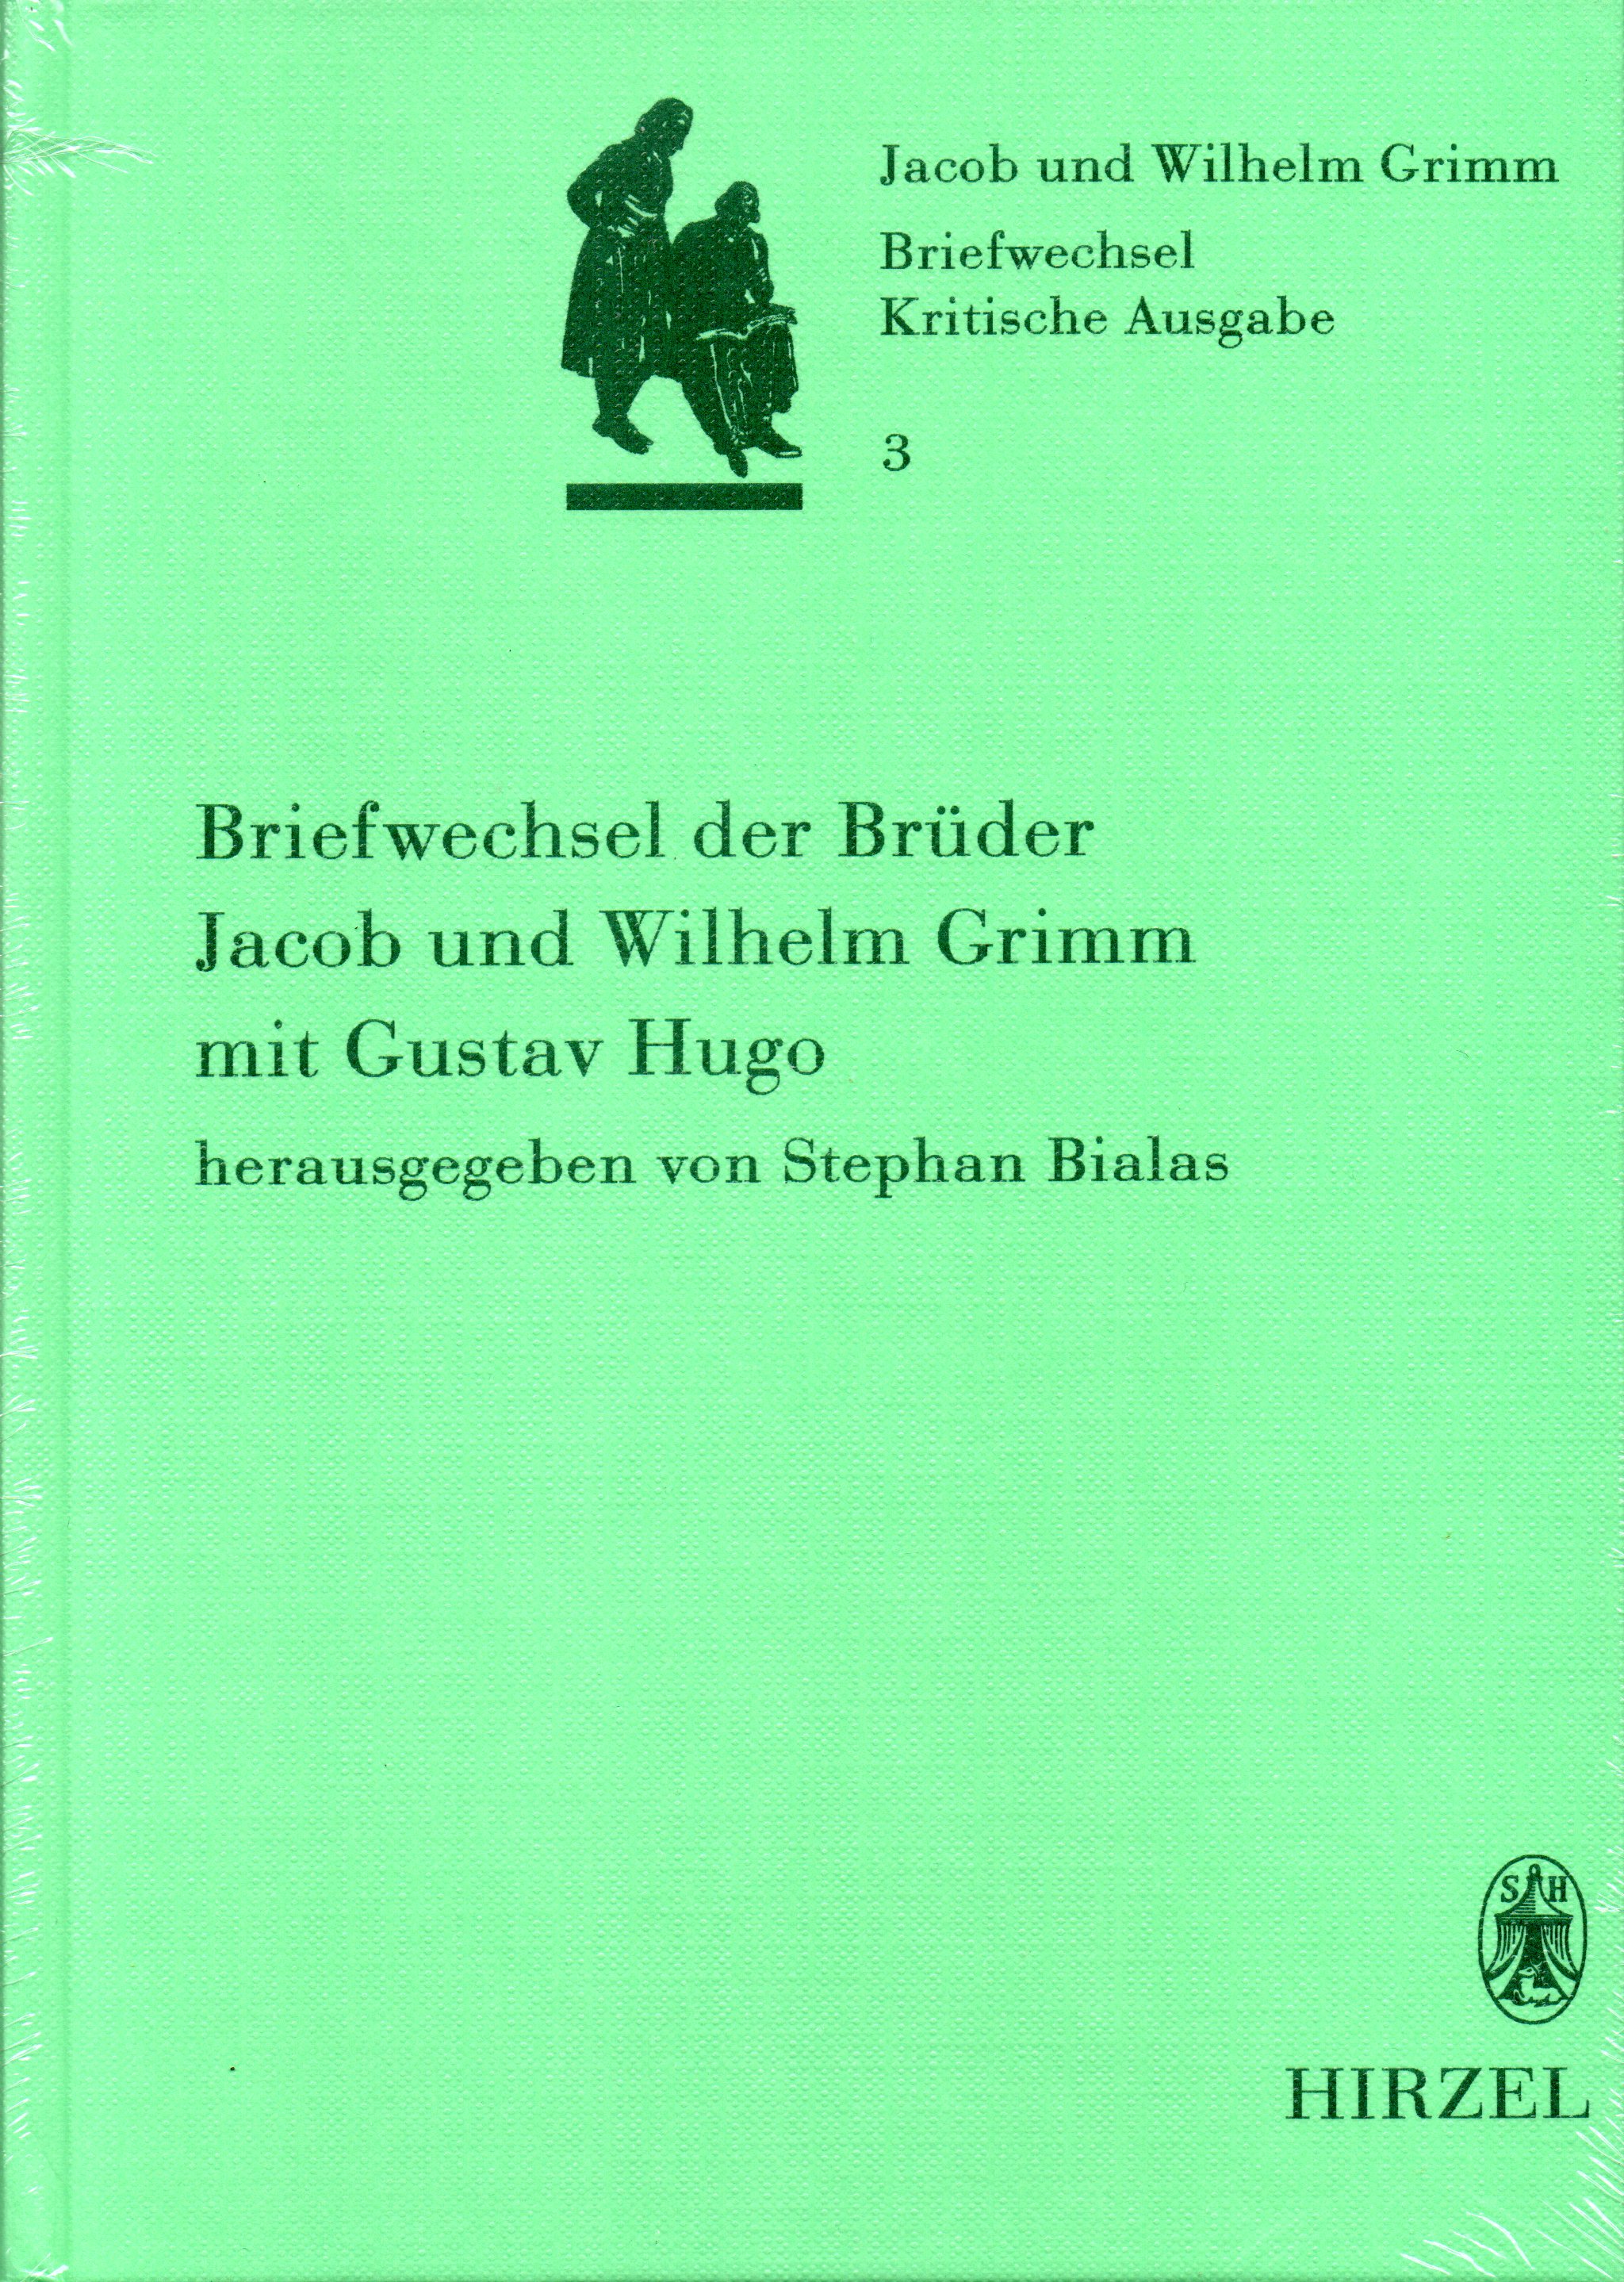 Briefwechsel der Brüder Jacob und Wilhelm Grimm mit Gustav Hugo. Kritische Ausgabe Band 3 - Jakob und Wilhelm Grimm